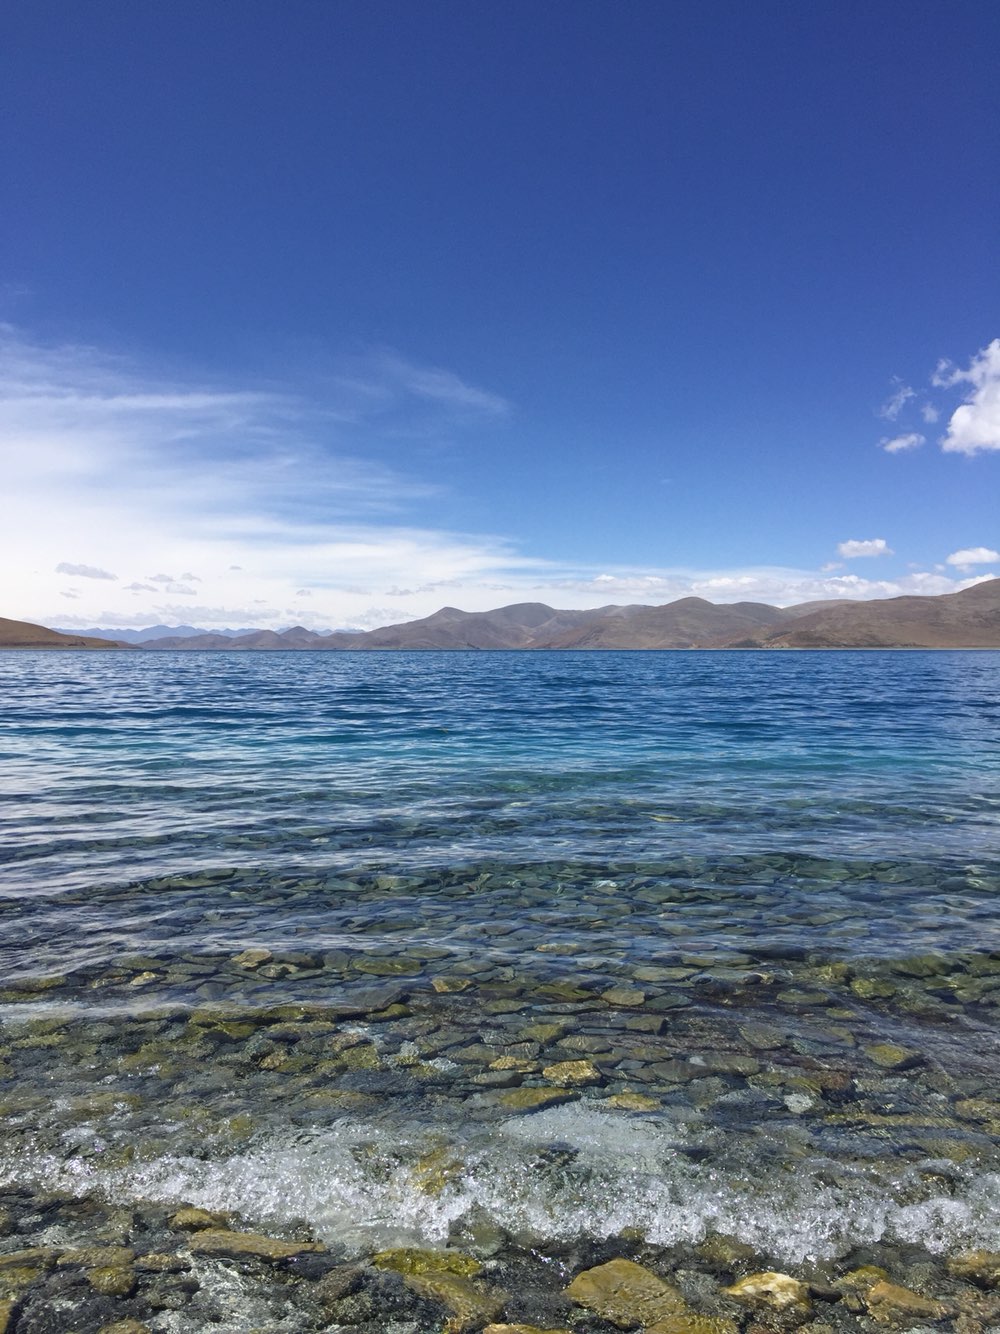 羊卓雍措（YamdrokTso），简称羊湖，藏语意为“碧玉湖”，是西藏